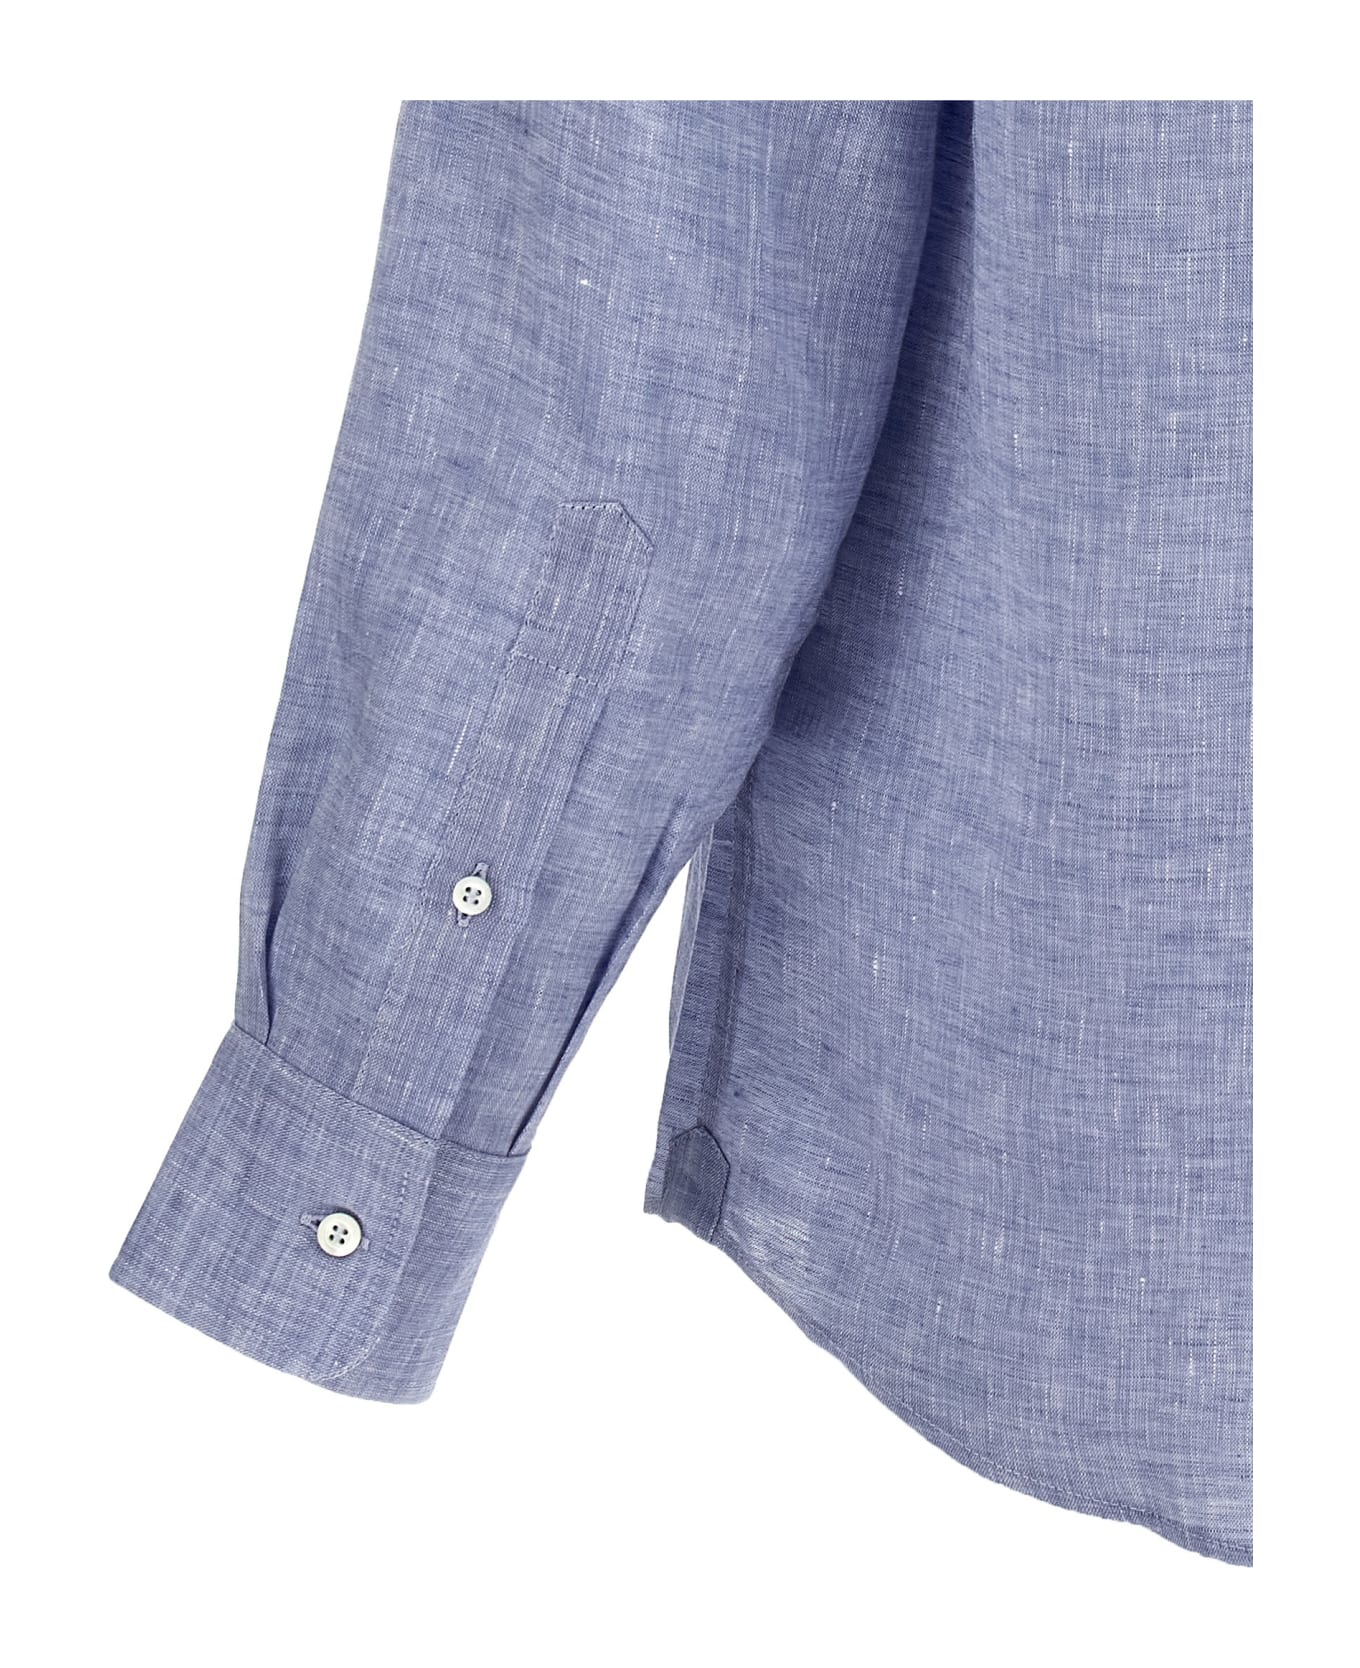 Brunello Cucinelli Linen Shirt - Clear Blue